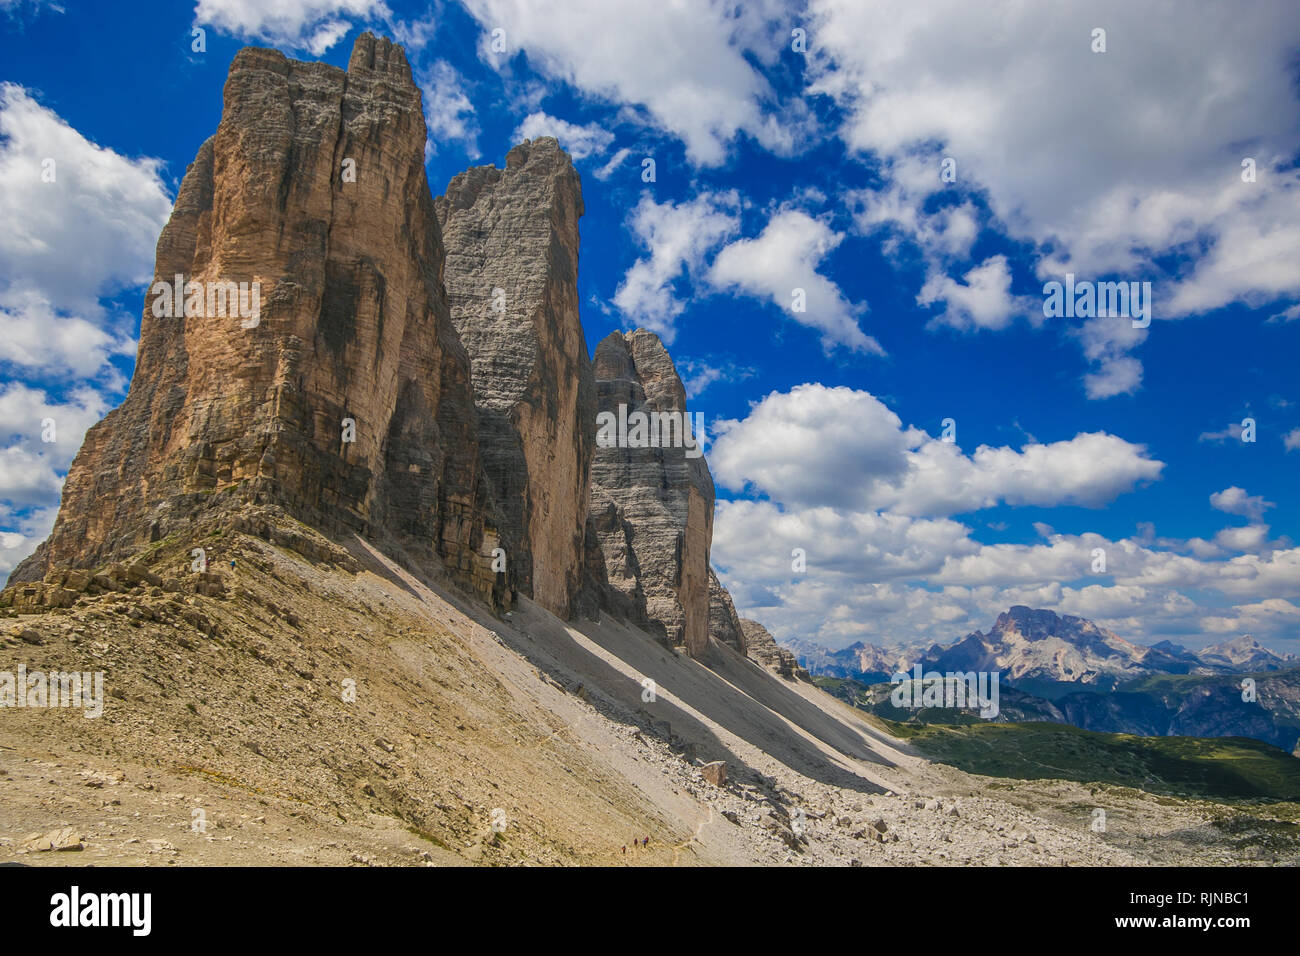 View of the famous and majestic Tre Cime di Lavaredo or Drei Zinnen in Alto Adige, Italy Stock Photo